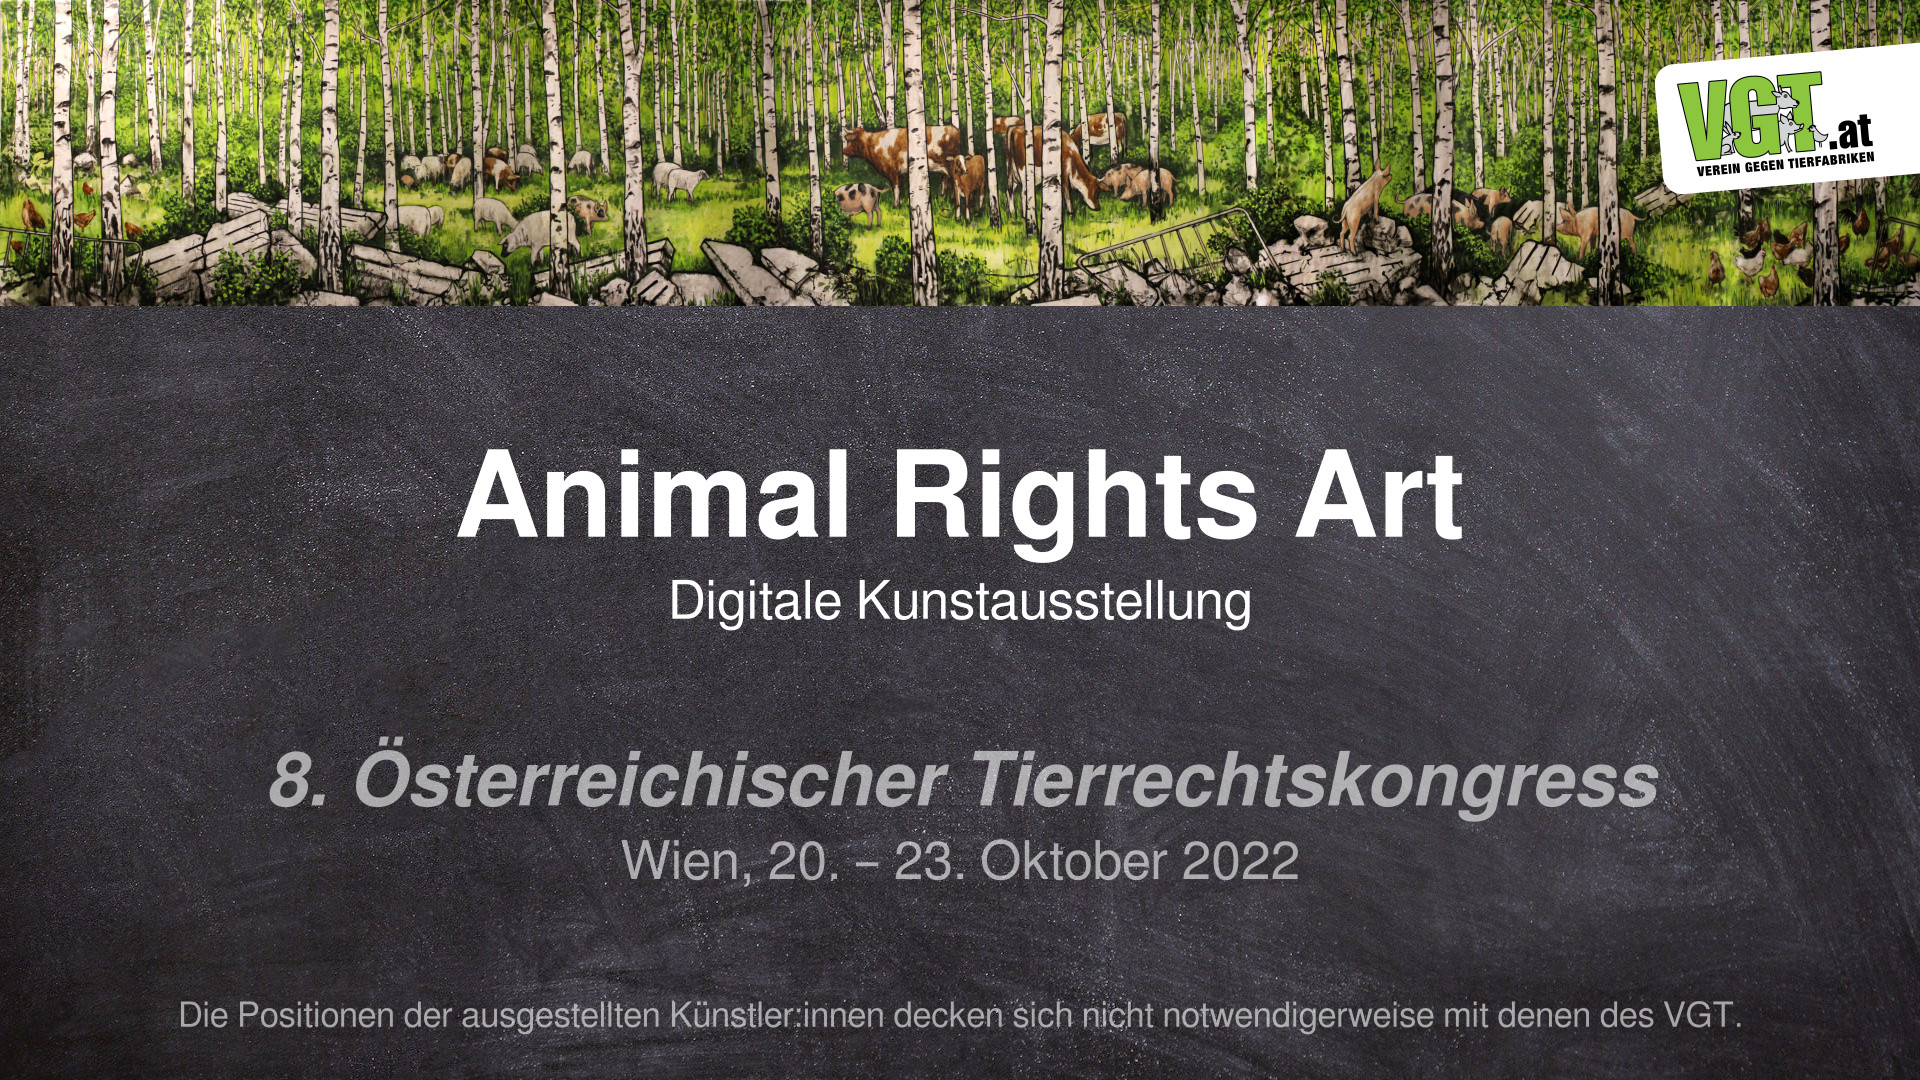 Digitale Kunstausstellung Tierrechtskongress 2022